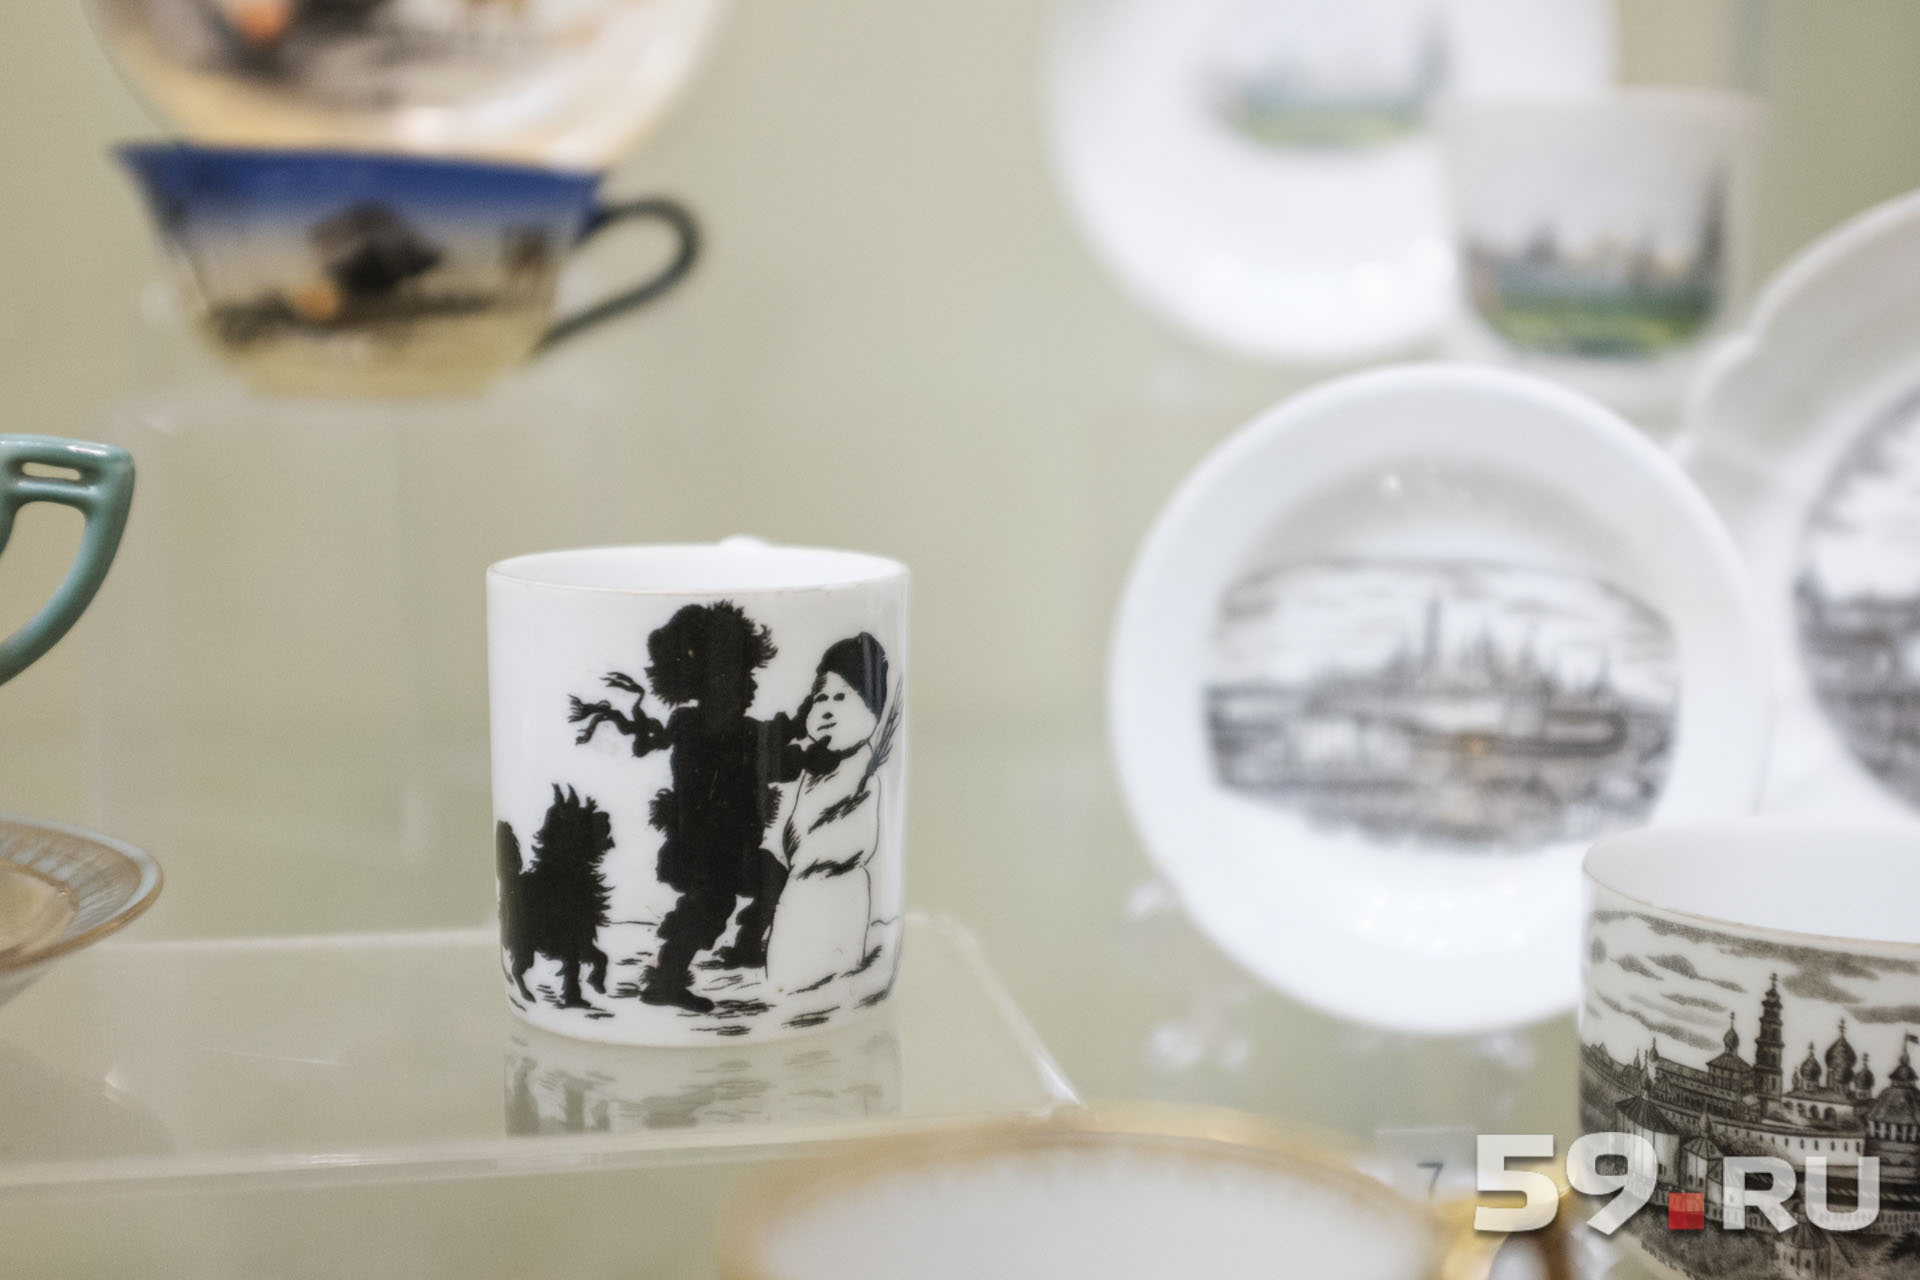 Первая чашка в коллекции досталась Галине Васильевне от бабушки. На ней по эскизам русской художницы и иллюстратора Елизаветы Бём нарисован мальчик, который лепит снеговика